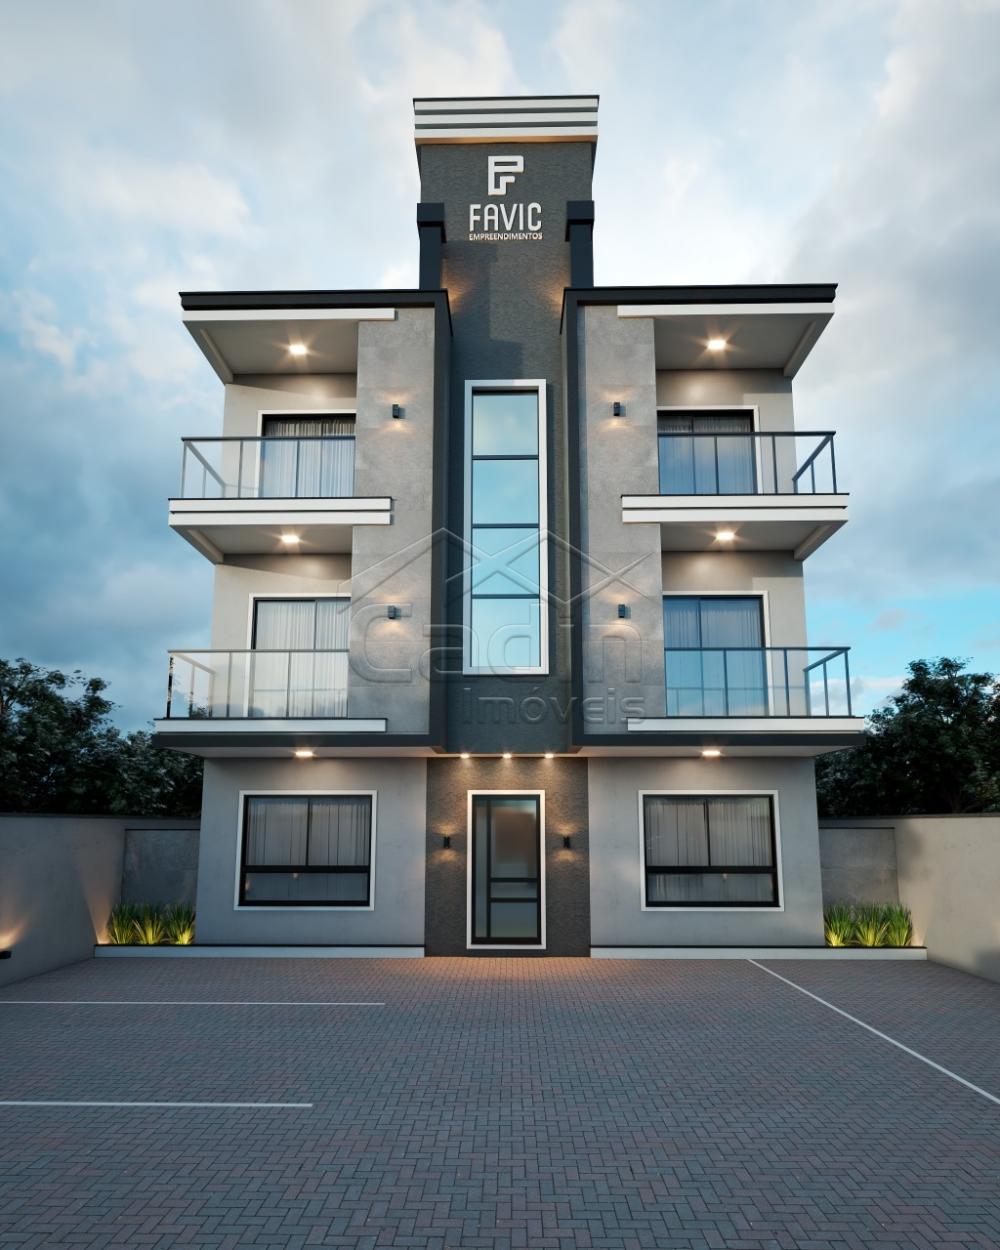 Galeria - Adhara Residence - Edifcio de Apartamento